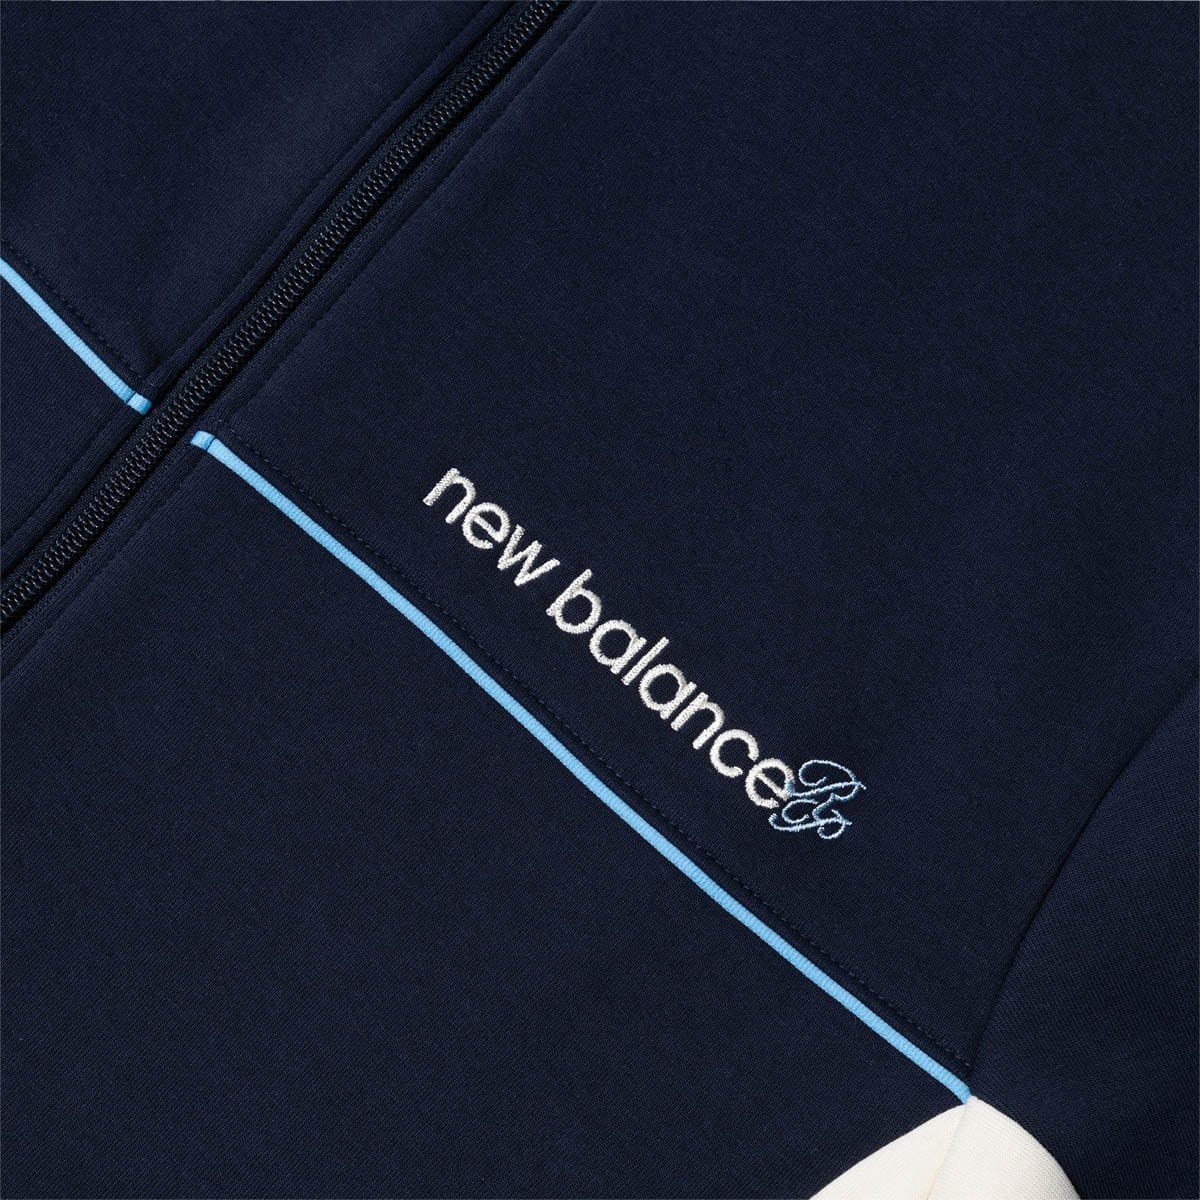 New Balance Outerwear x Rich Paul JACKET